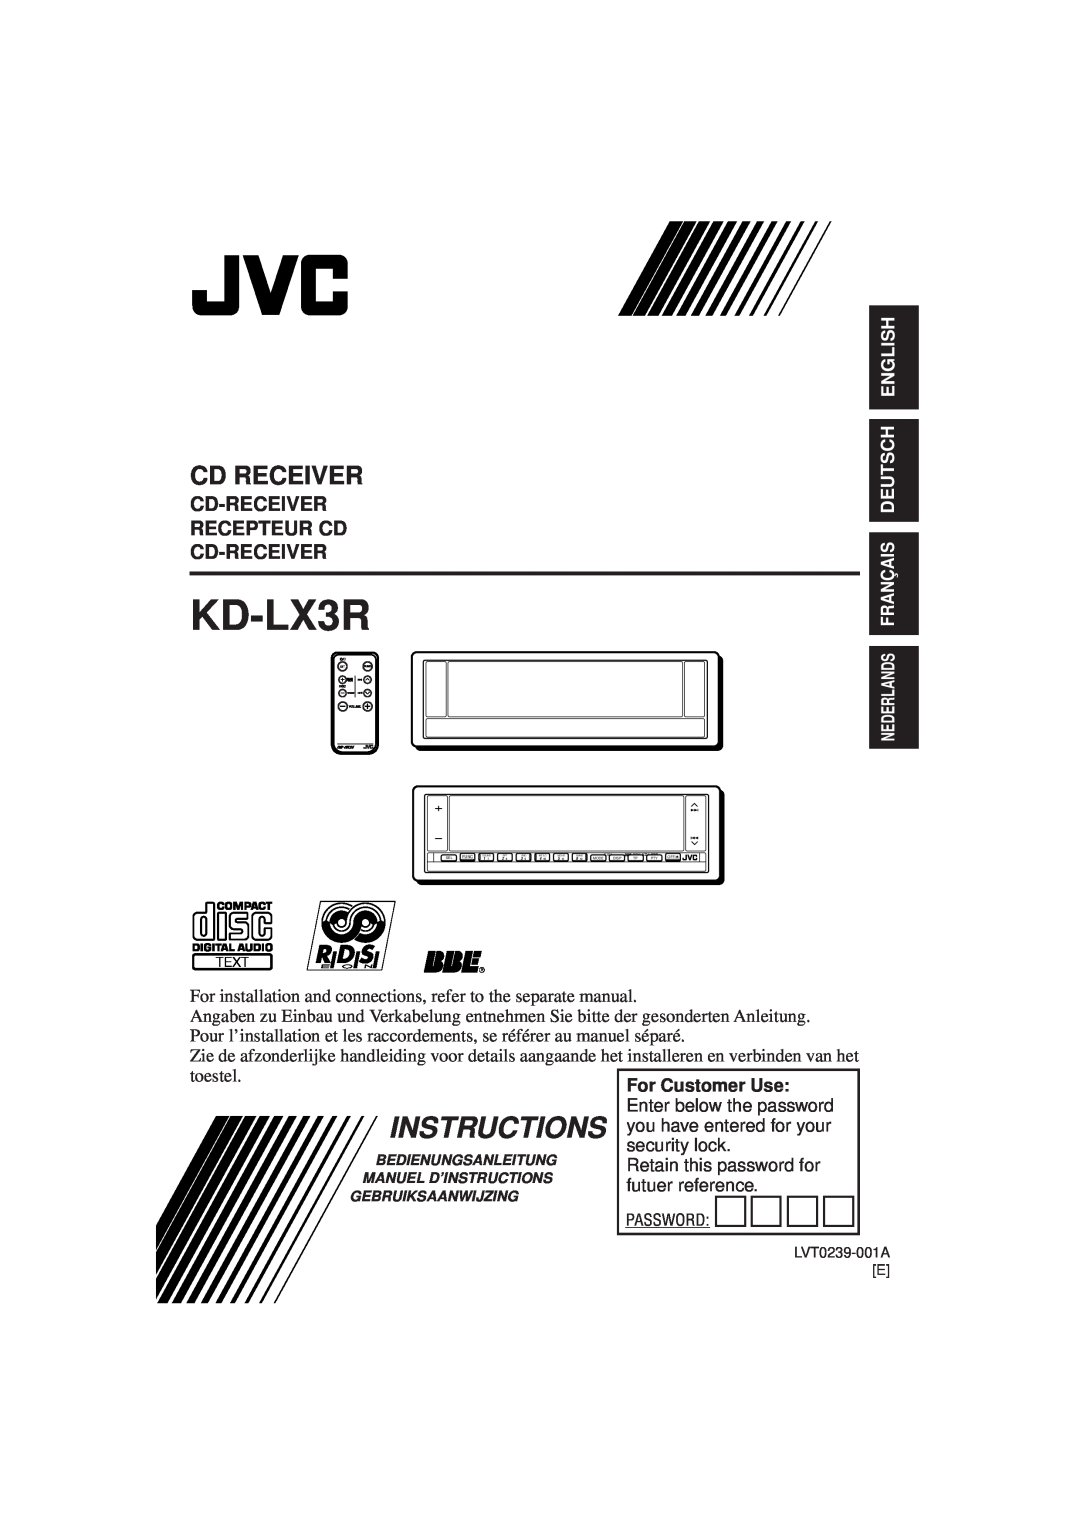 JVC KD-LX3R manual Instructions, Cd Receiver, Cd-Receiver Recepteur Cd Cd-Receiver, Nederlands Français Deutsch English 